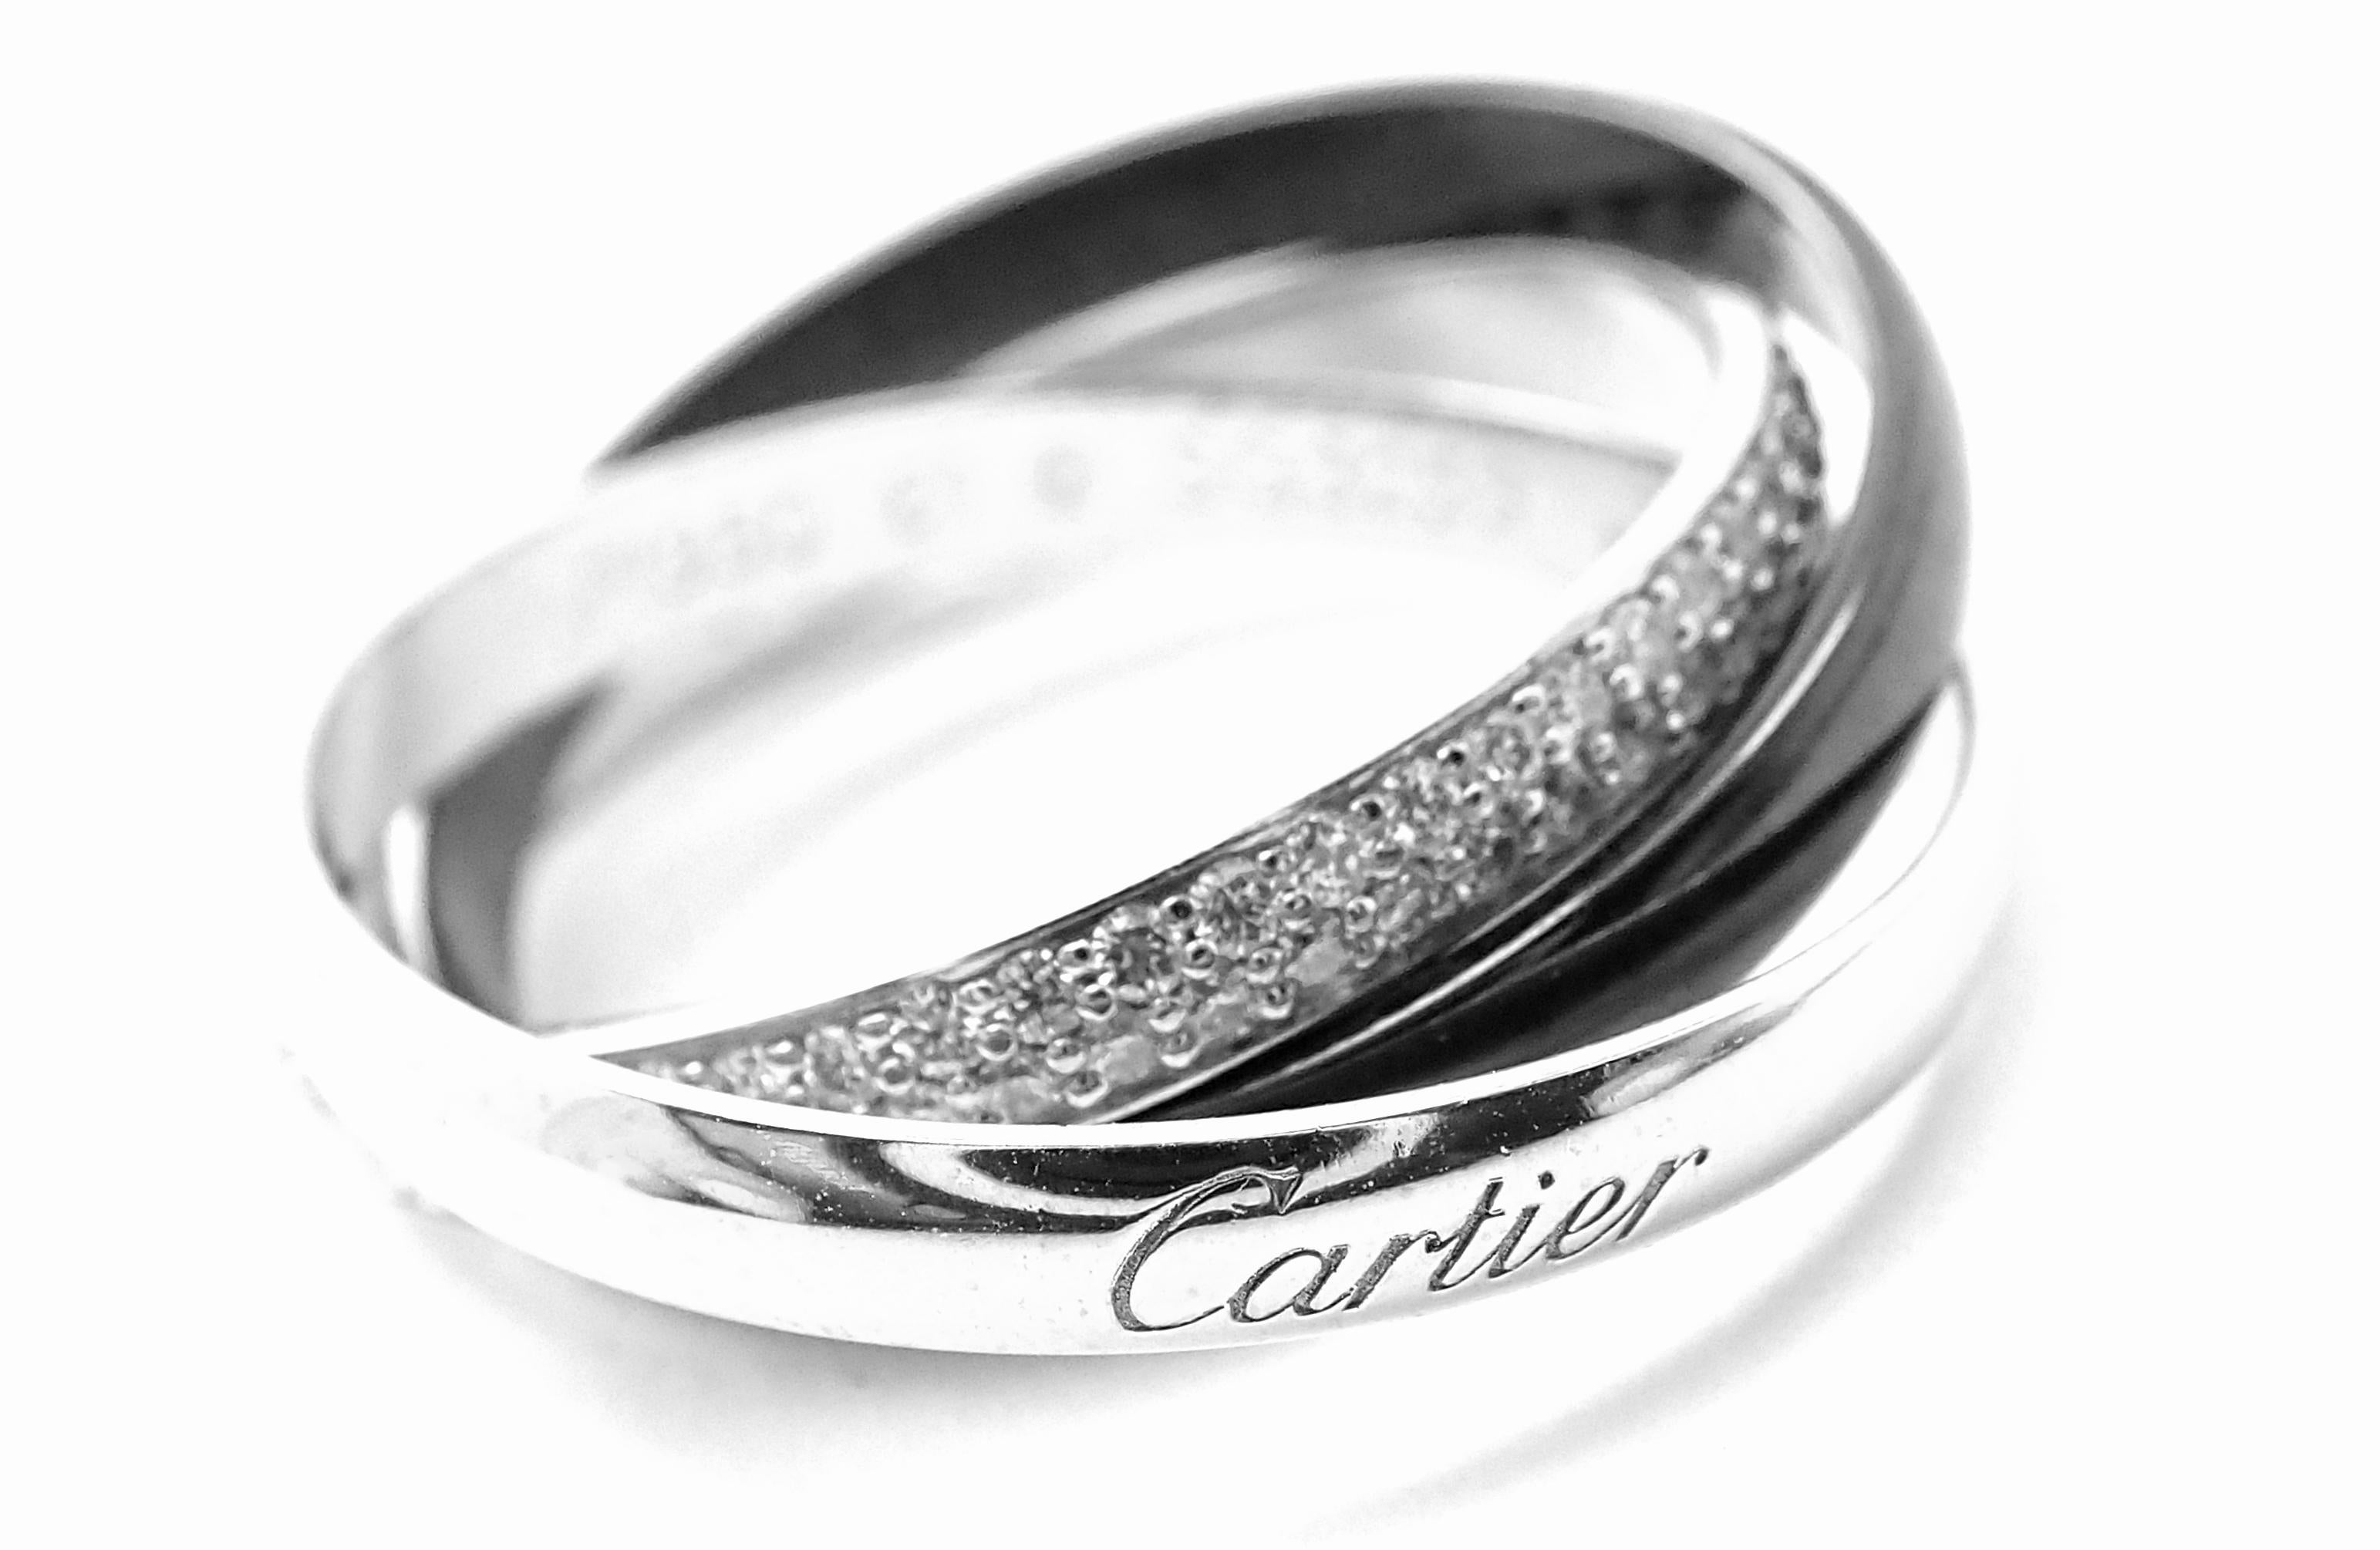 Wunderschöner Cartier Diamant Dreiband Trinity Ring aus Platin, Keramik und 18k Weißgold. 
Mit 100 runden Diamanten im Brillantschliff VVS1 Reinheit, F-H Farbe Gesamtgewicht ca. .45ct
Dieser schöne Ring wird mit einer originalen Cartier-Box und